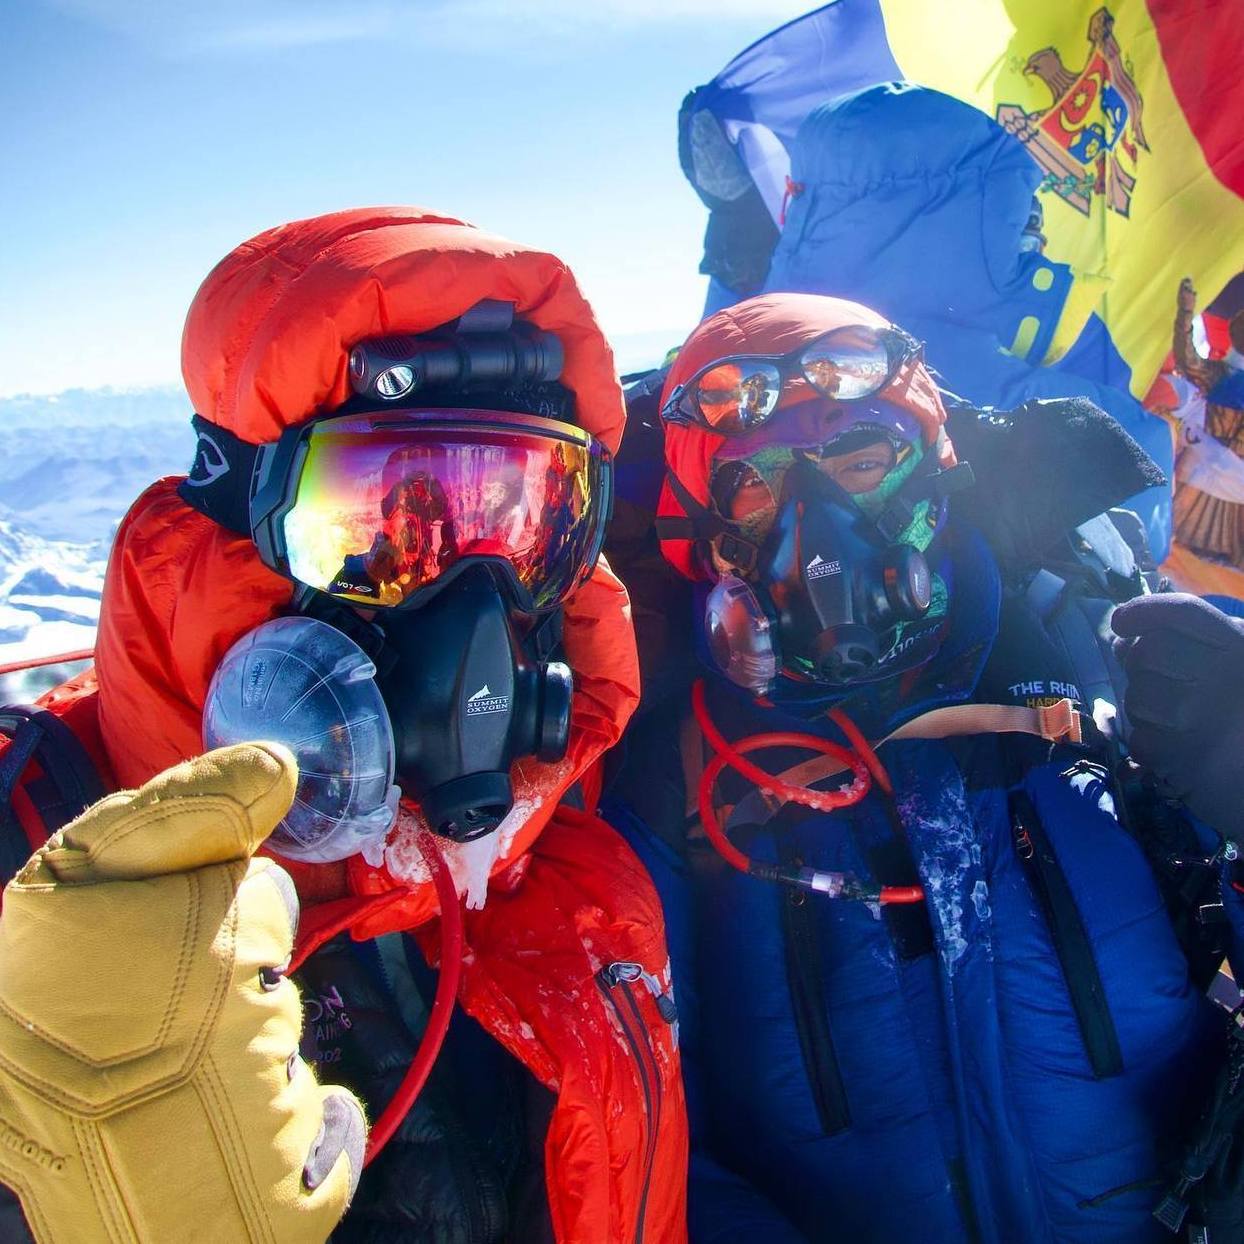 Art Muir y su guía Sherpa posan en la cima del mundo. Muir a sus 75 años es el americano más viejo en escalar al tope del Monte Everest. Foto cortesía de Art Muir.